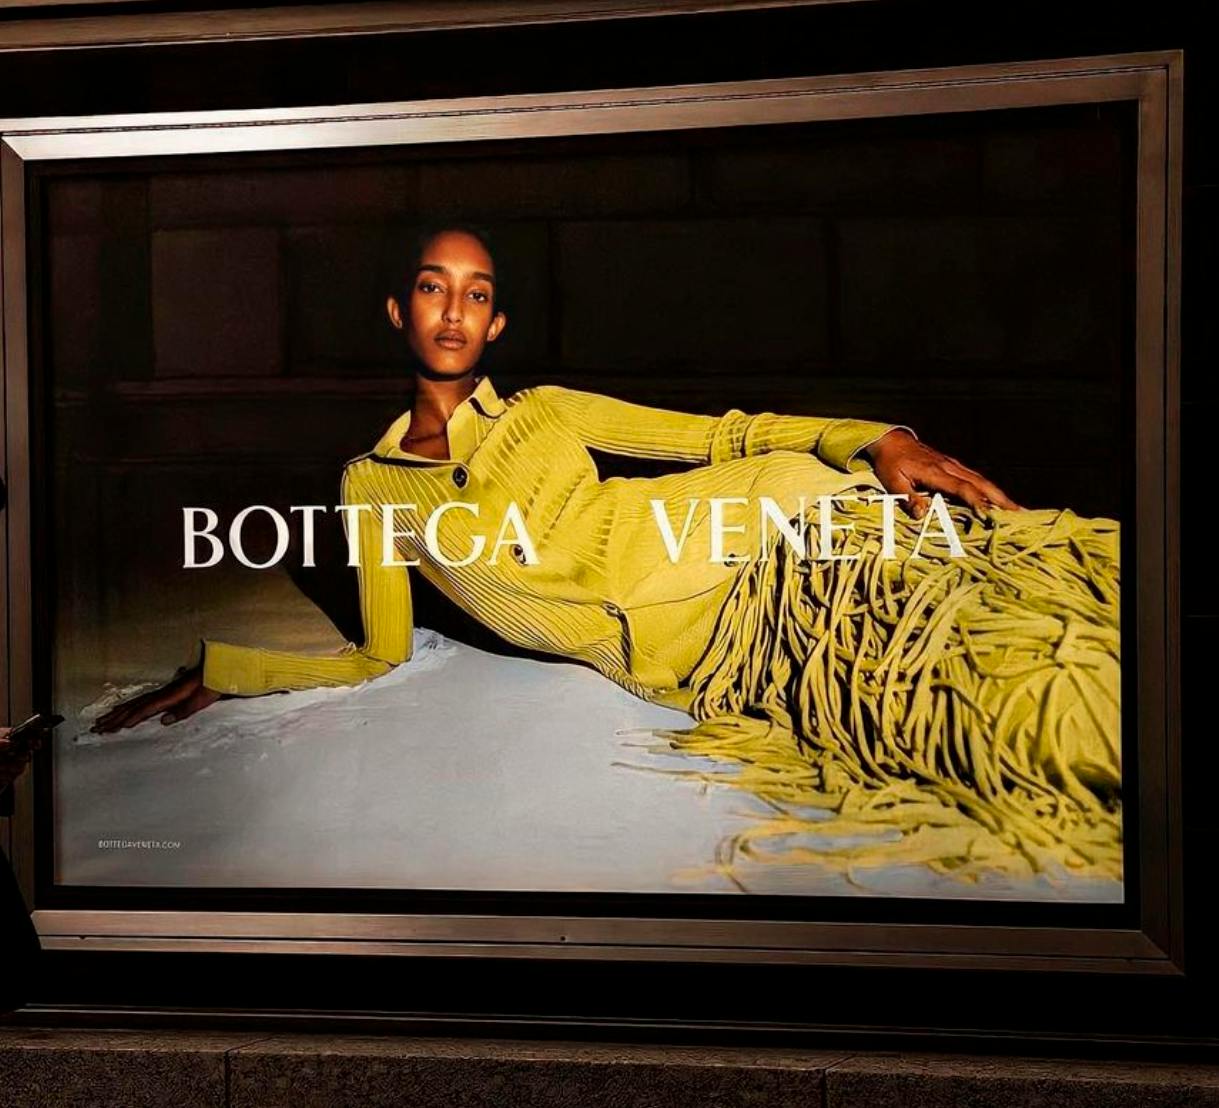 Daniel Lee has left Bottega Veneta – HERO